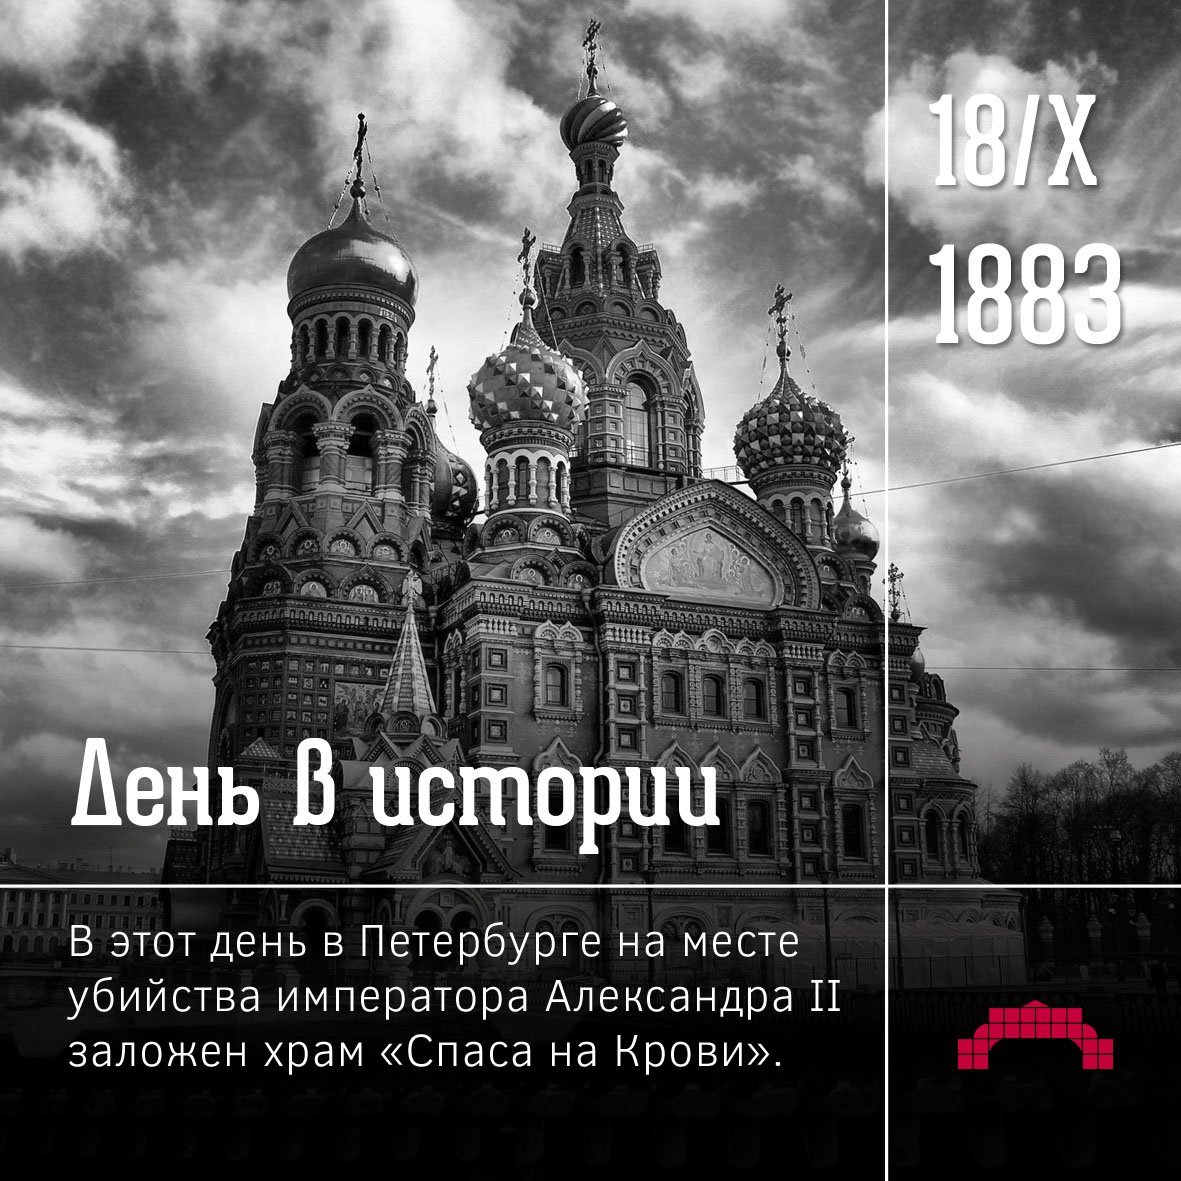 Время 18 октября. 18 Октября 1883 года в Петербурге был заложен храм «Спаса на крови»..